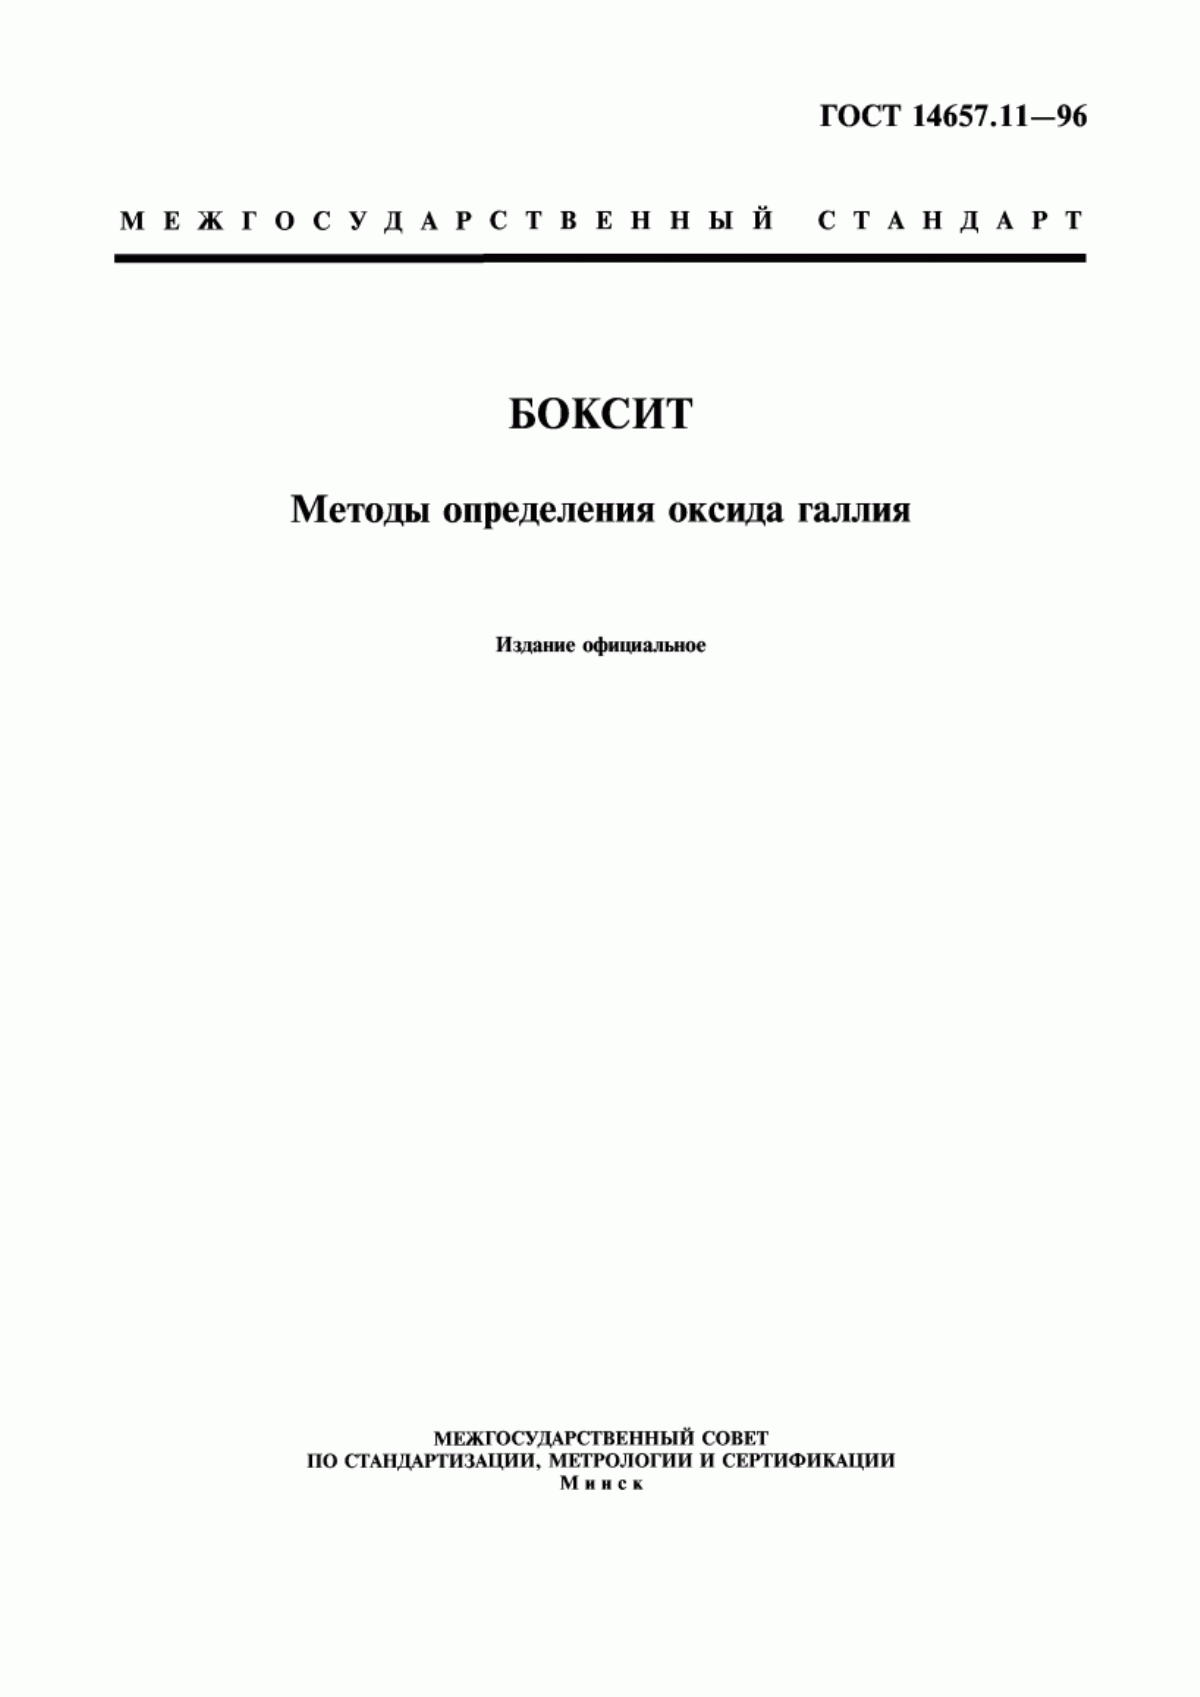 ГОСТ 14657.11-96 Боксит. Методы определения оксида галлия